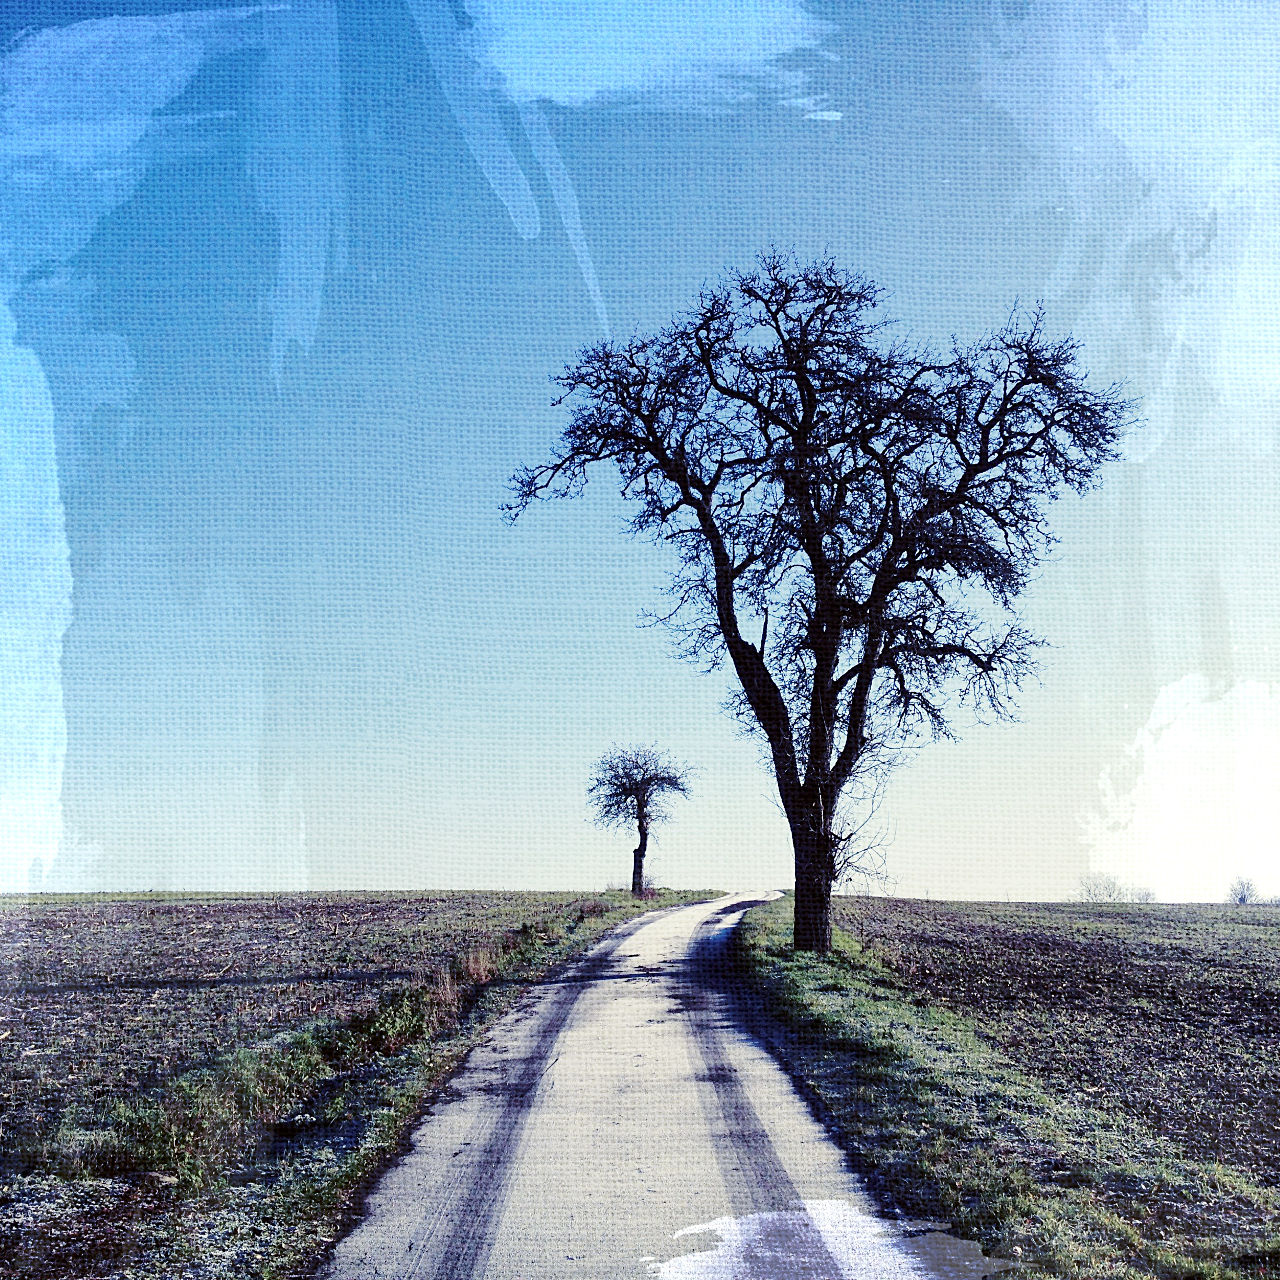 Blick einen leicht gekrümmten, schmaslen Teerweg entlang, an dessen rechter Seite ein kahler Birnbaum steht, links im Hintergrund ein krummer Apfelbaum. Blauer Himmel, Leinwand-Struktur, der Weg trägt Raureif und eine Fahrzeugspur.